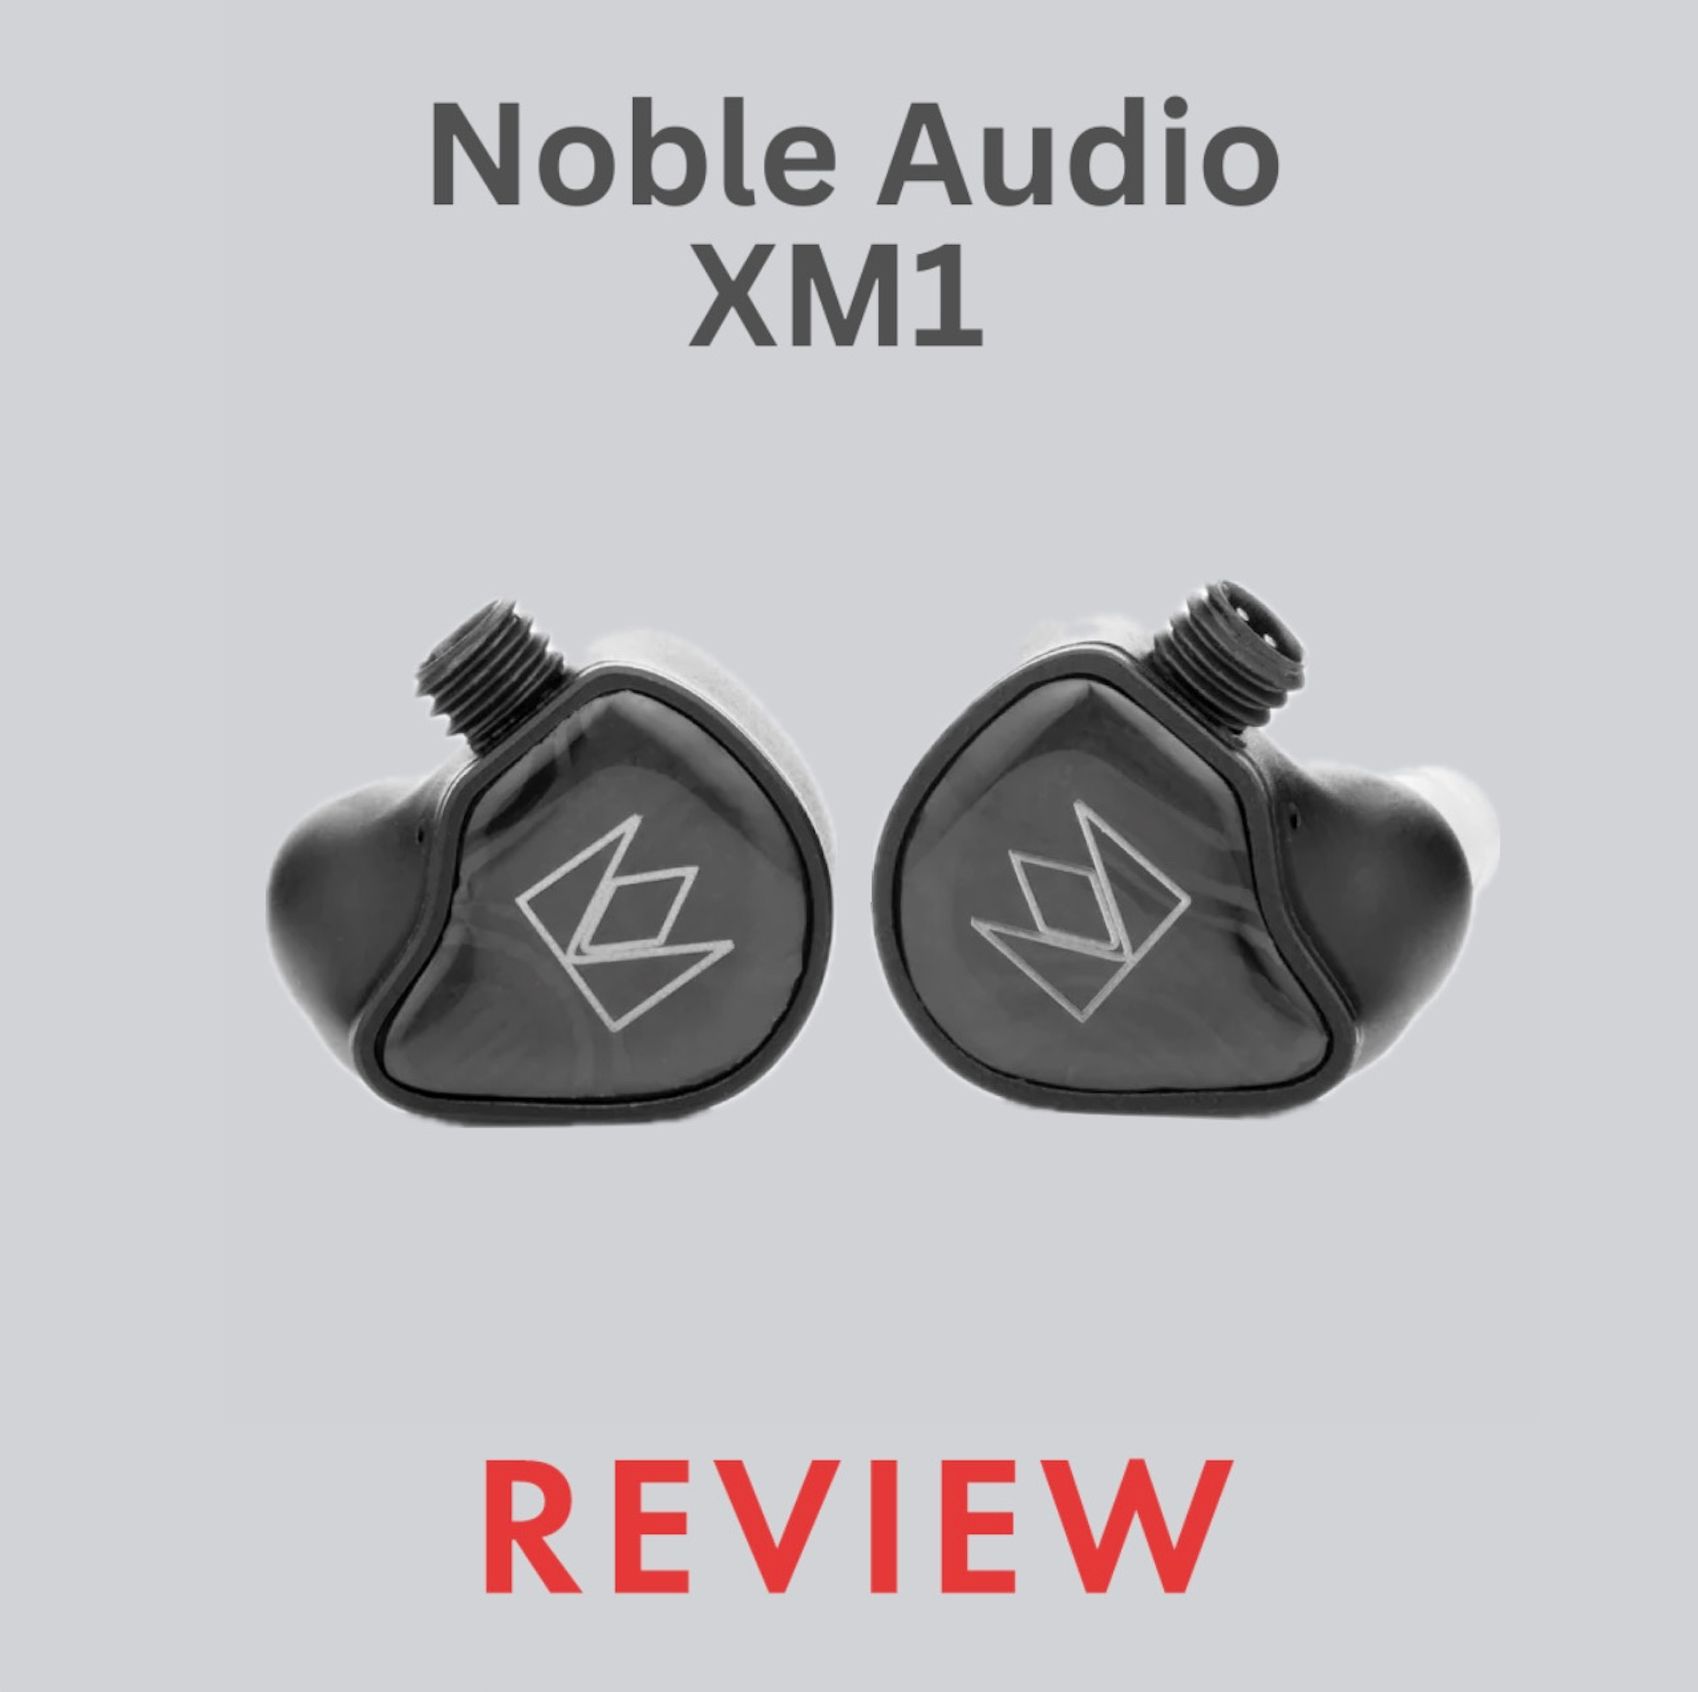 NOBLE AUDIO XM1 REVIEW - NEW xMEMS DRIVER